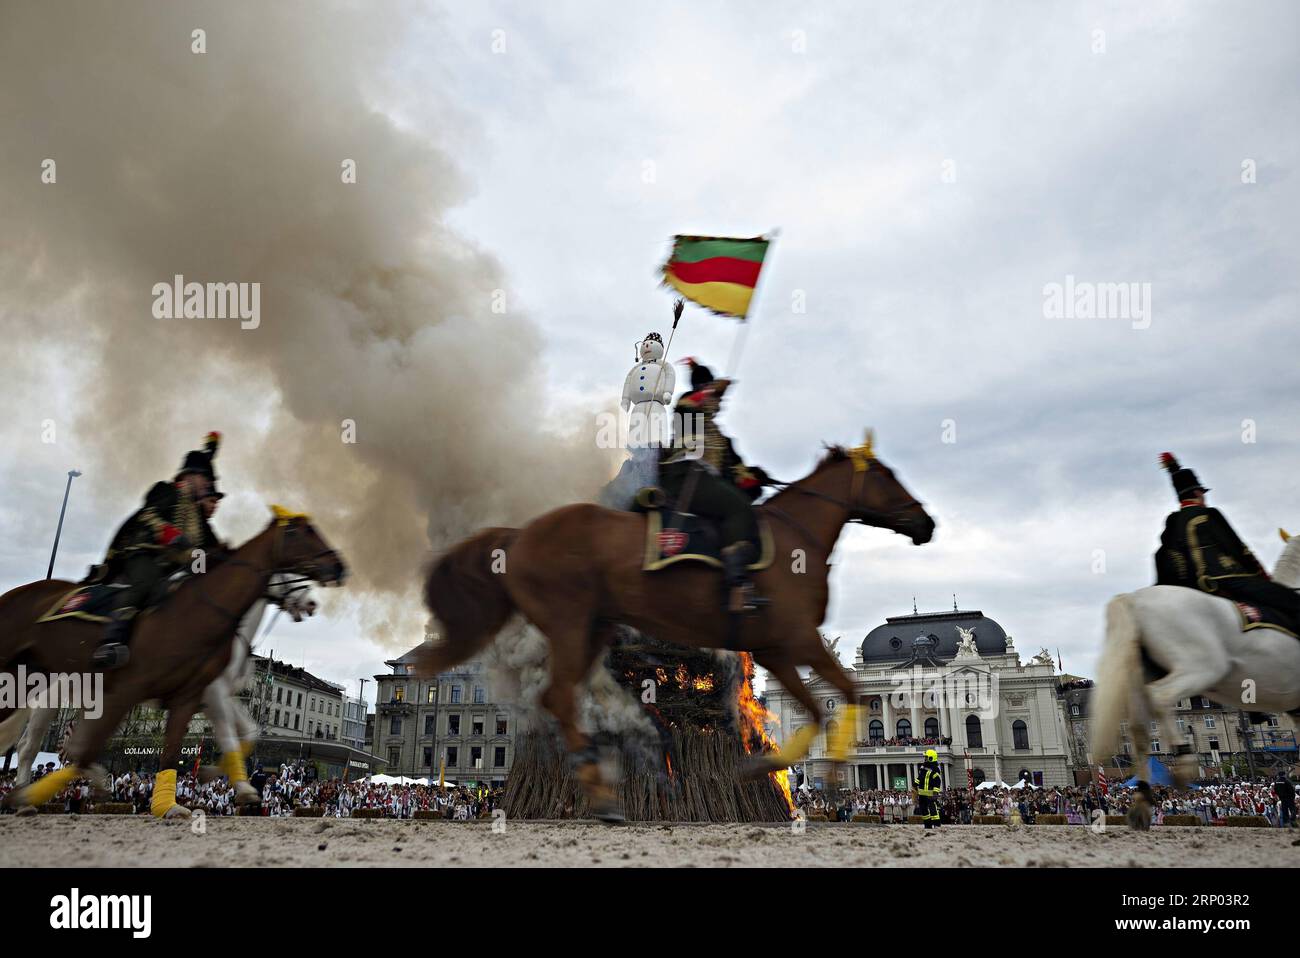 (180416) -- ZURIGO (SVIZZERA), 16 aprile 2018 -- Guildsmen cavalcano a cavallo intorno a un pupazzo di neve simbolico durante il Sechselauten, un festival primaverile locale, a Zurigo, in Svizzera, il 16 aprile 2018. Il Sechselauten è una festa tradizionale che segna la fine dell'inverno con una sfilata di gilde in costumi storici e l'incendio di un pupazzo di neve simbolico. ) SVIZZERA-ZURIGO-SECHSELAUTEN-SPRING FESTIVAL MichelexLimina PUBLICATIONxNOTxINxCHN Foto Stock